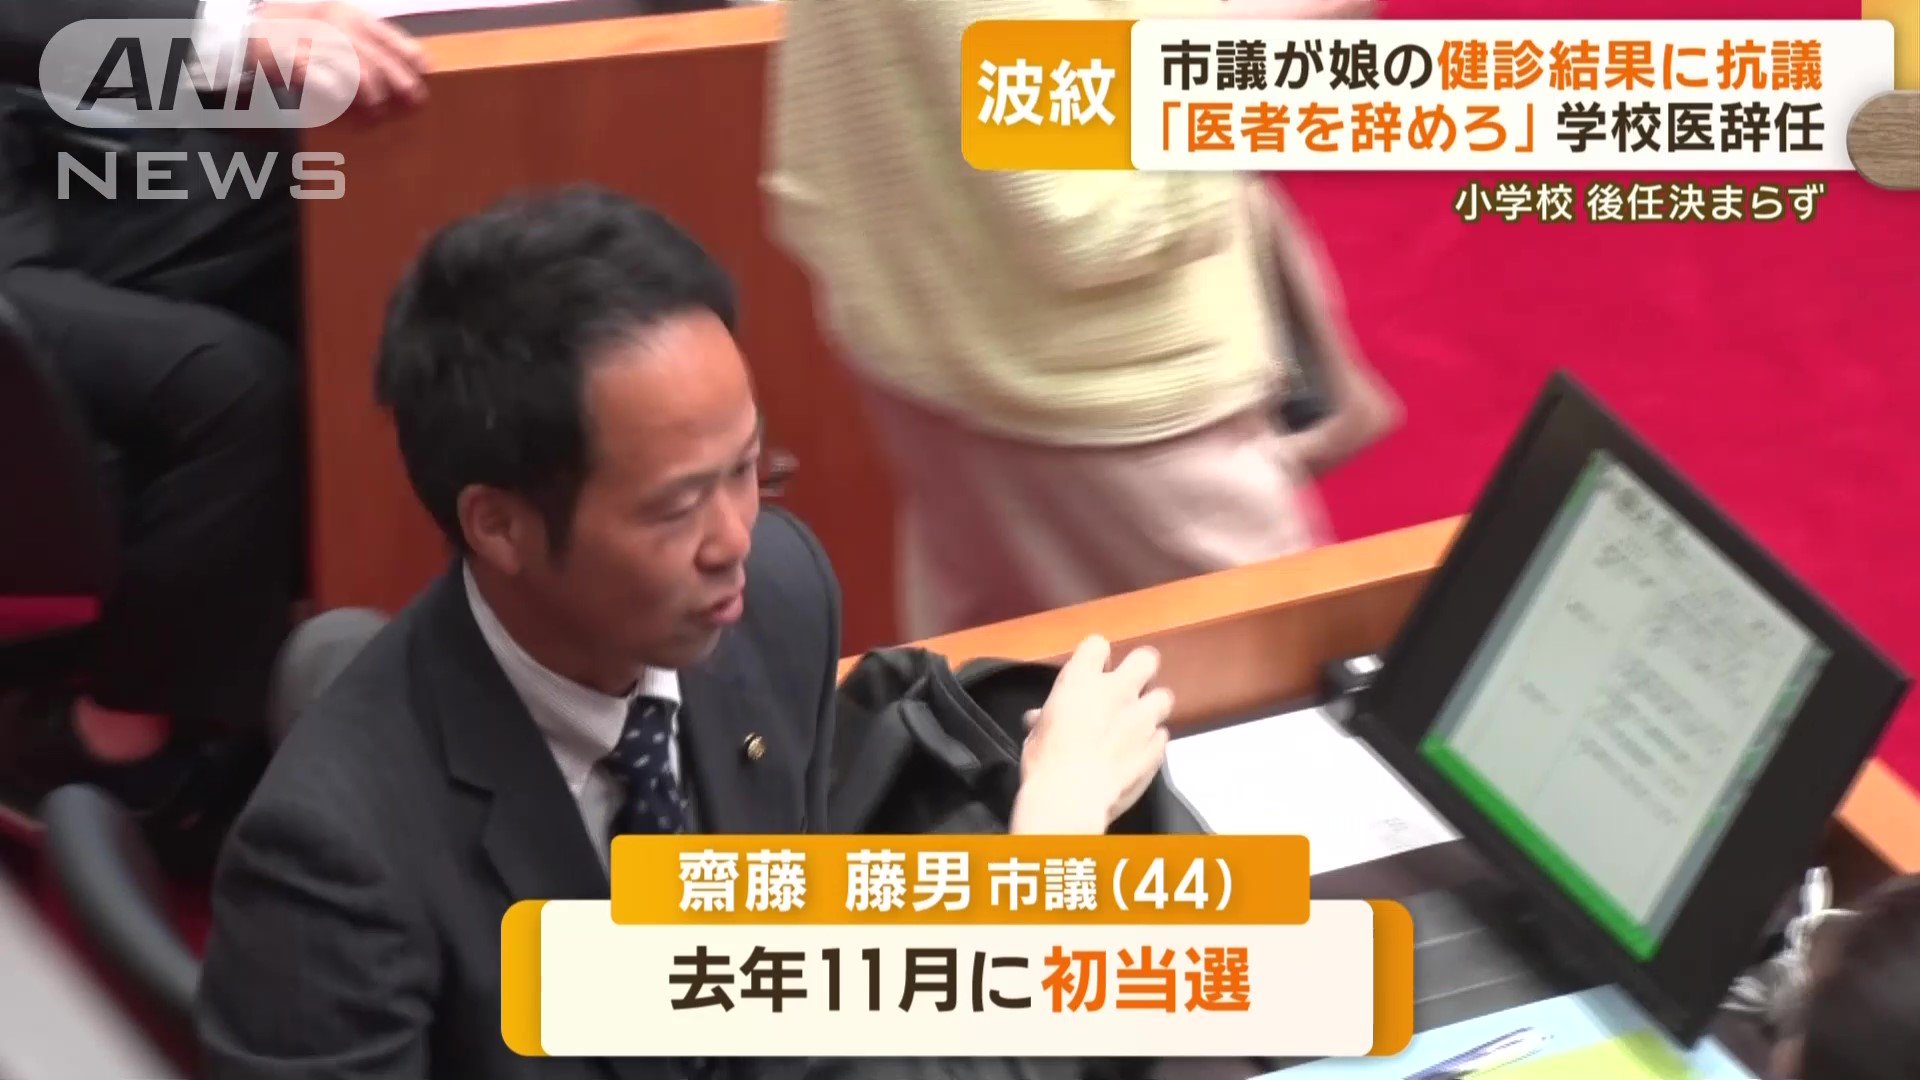 斎藤市議は去年11月に初当選した新人議員